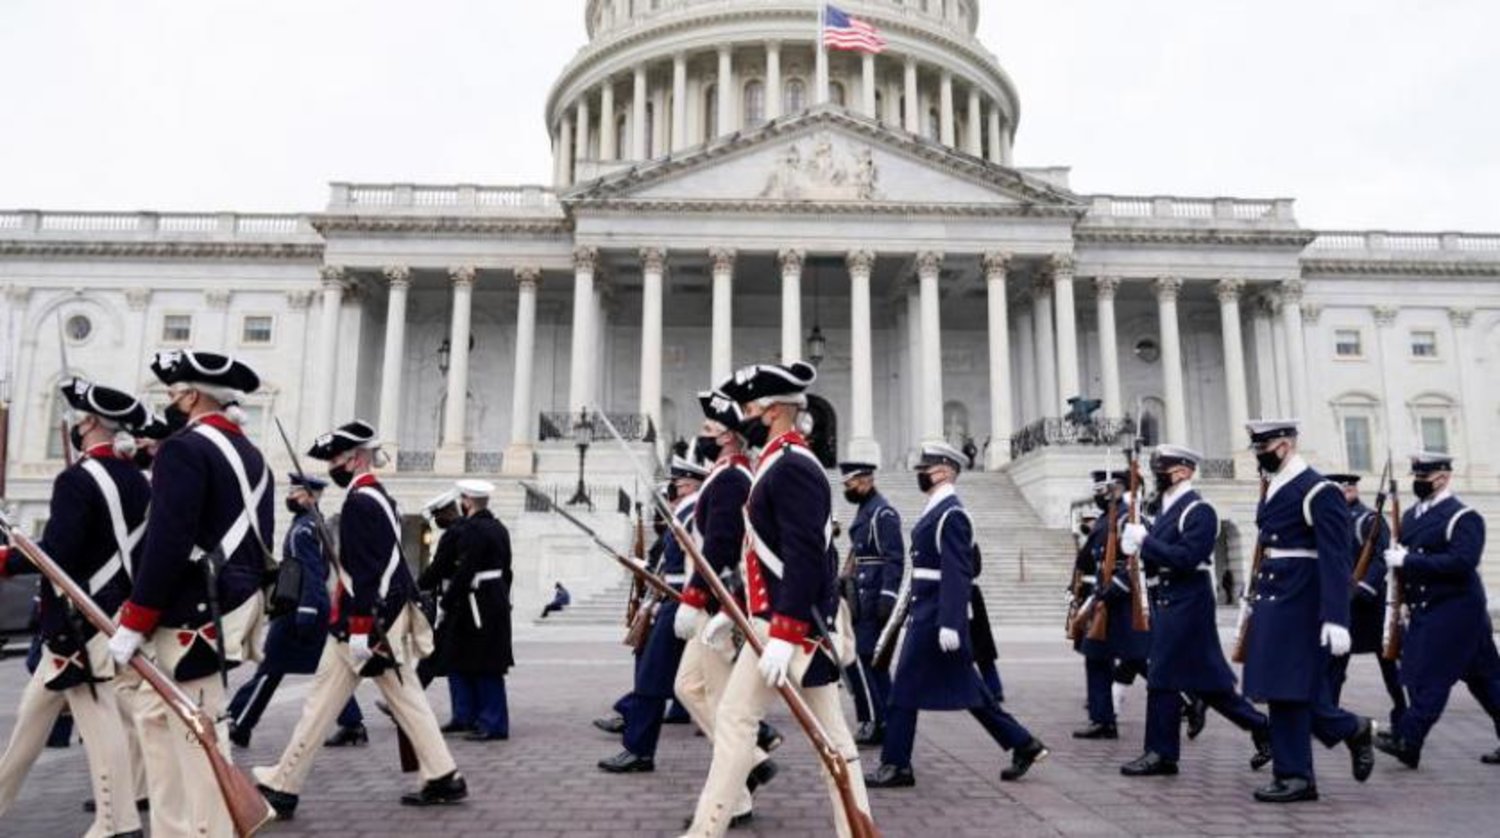 Ulusal Muhafız personeli Biden’ın açılışına hazırlık olarak Kongre önünde konuşlandırıldı (Reuters)